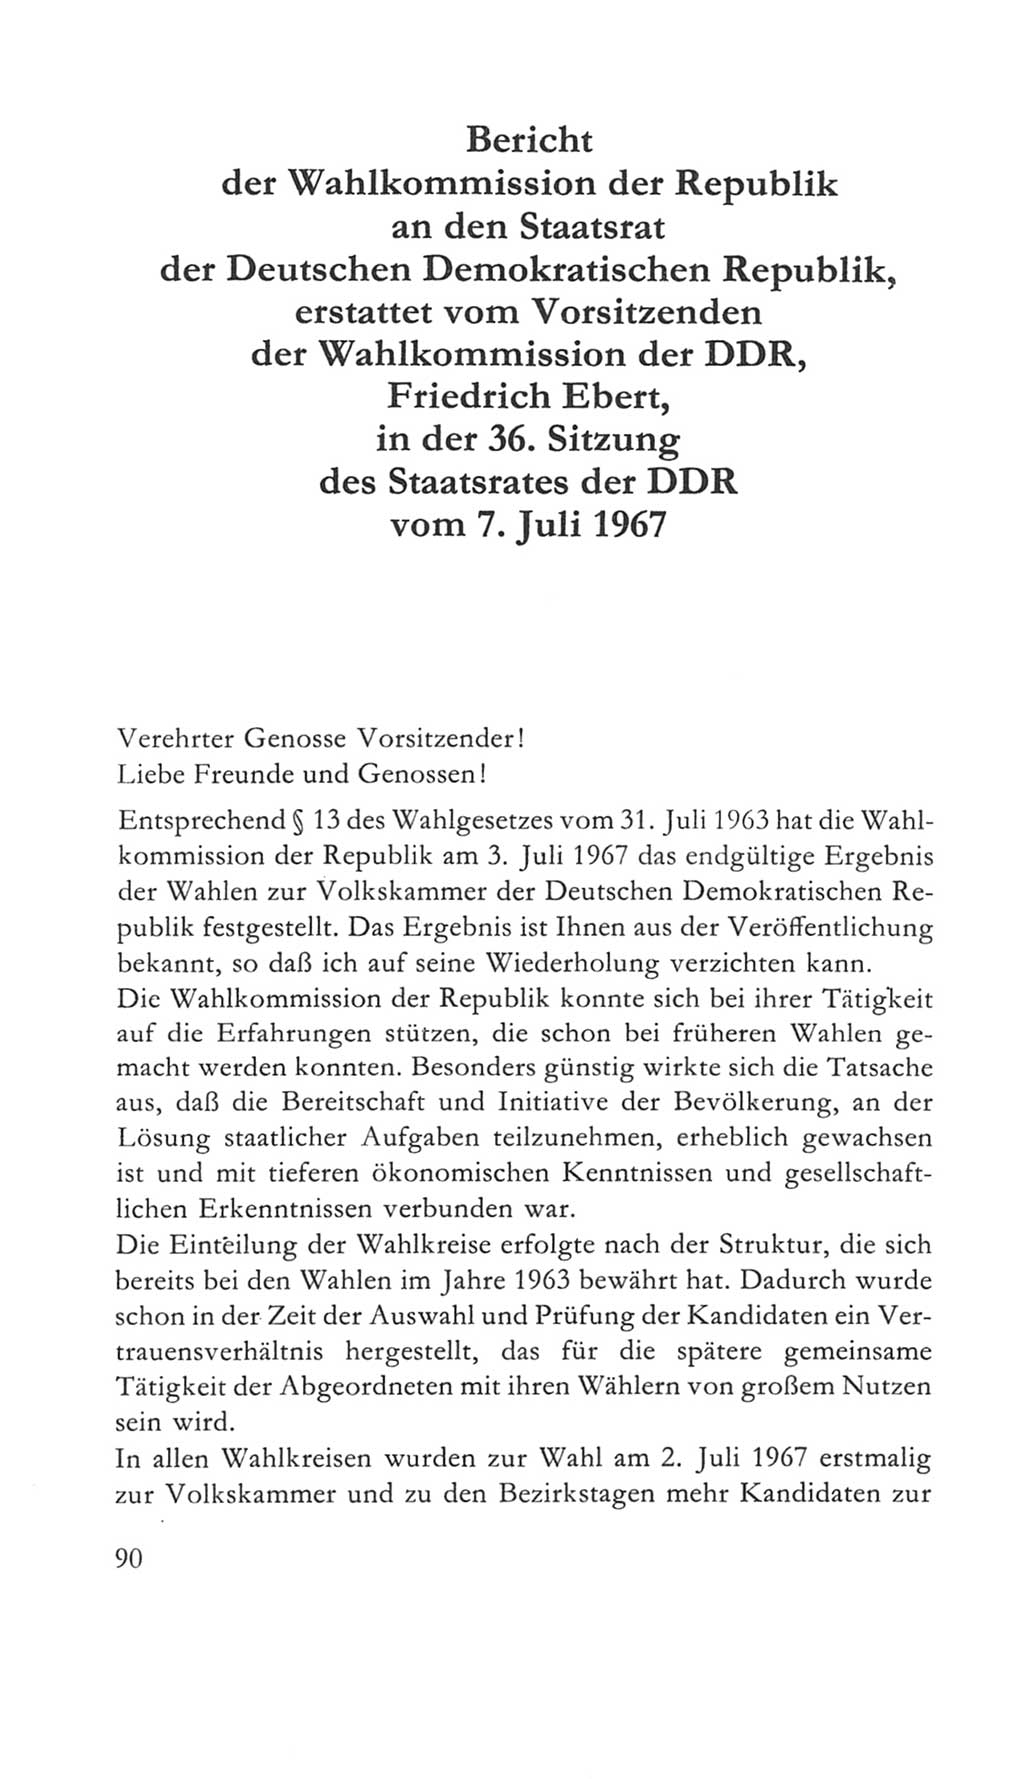 Volkskammer (VK) der Deutschen Demokratischen Republik (DDR) 5. Wahlperiode 1967-1971, Seite 90 (VK. DDR 5. WP. 1967-1971, S. 90)